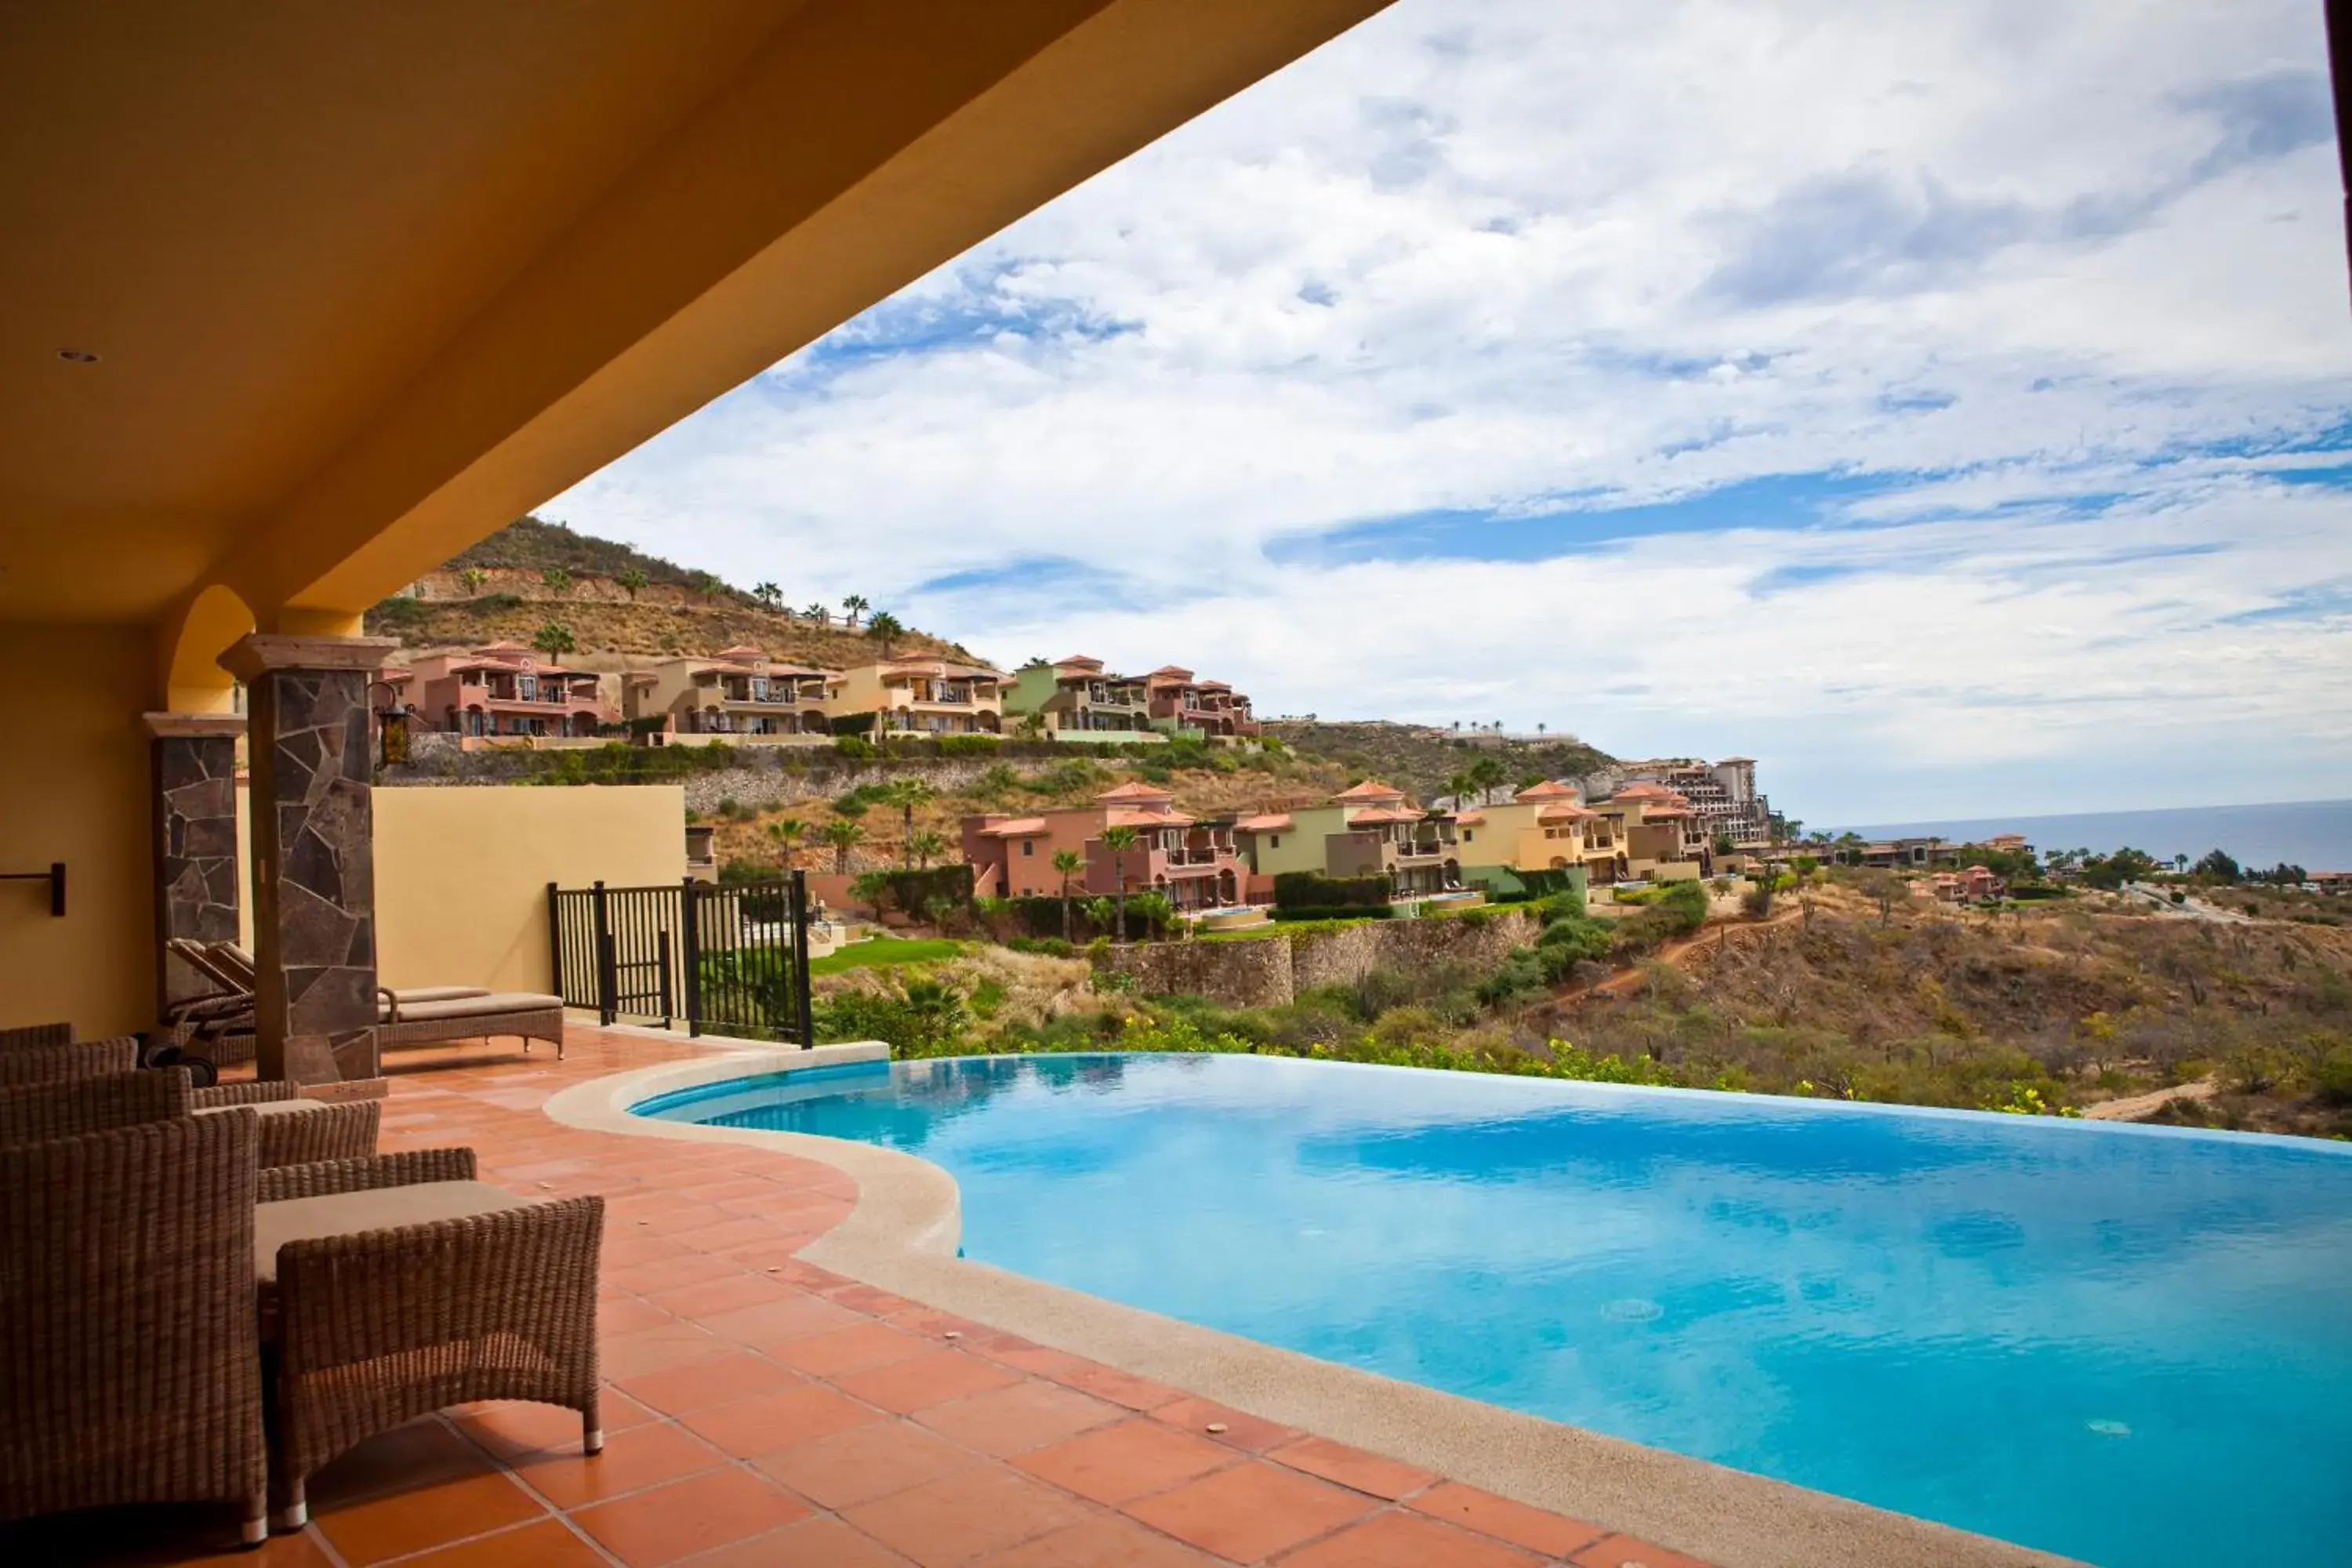 Swimming Pool in Montecristo Villas at Quivira Los Cabos -Vacation Rentals